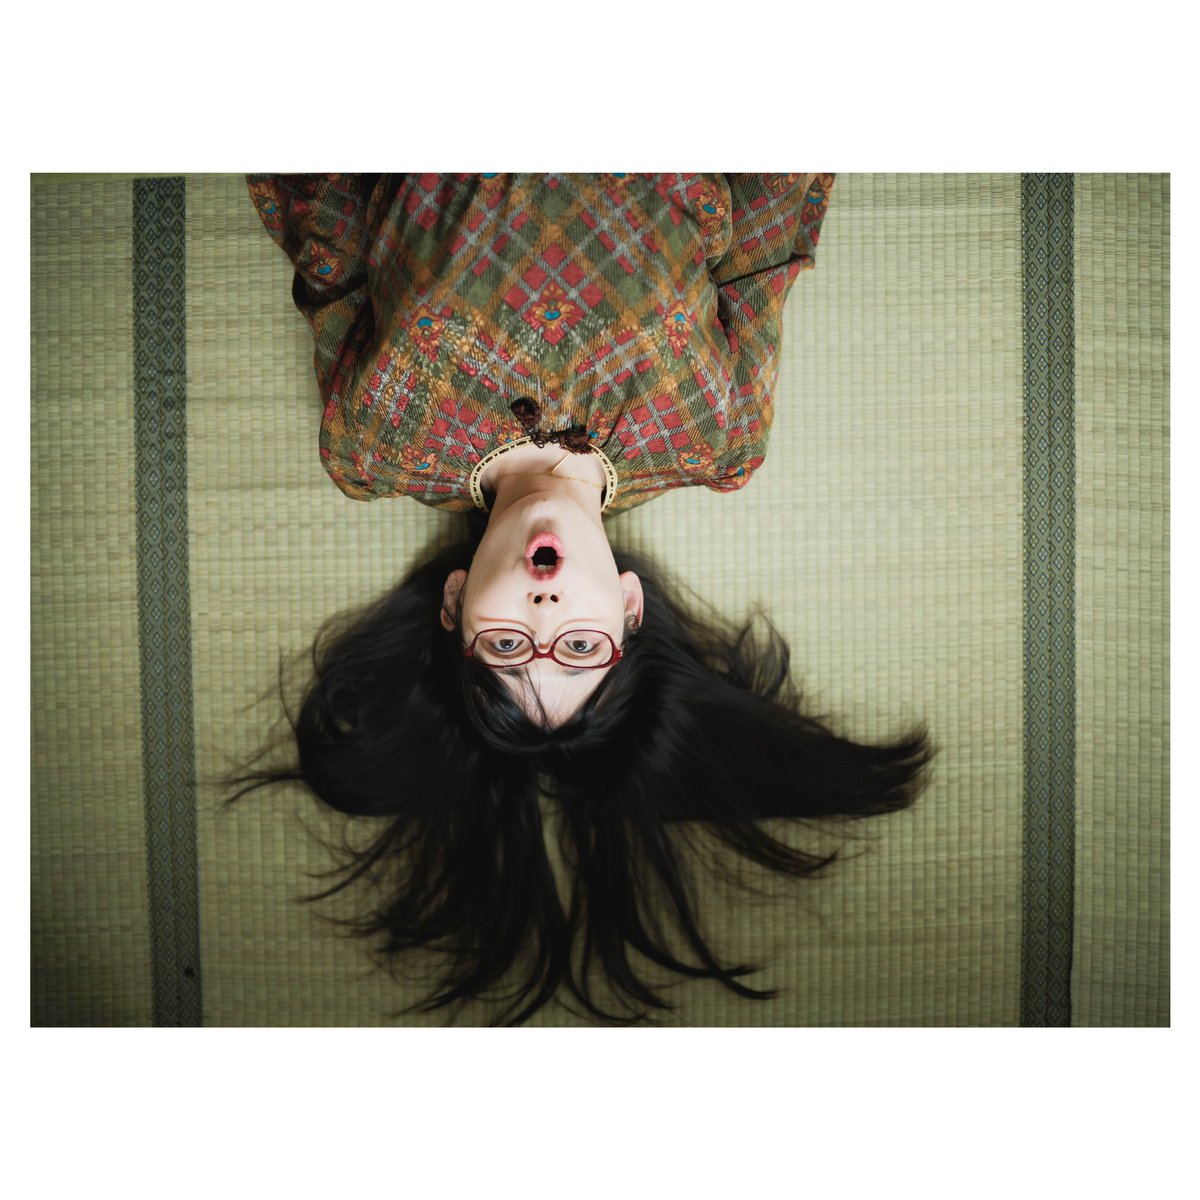 しっかり根を張る〔ゆい〕 @yukaisan3 #被写体 #ポートレート #photography #portrait #人にはそれぞれ魅力がある